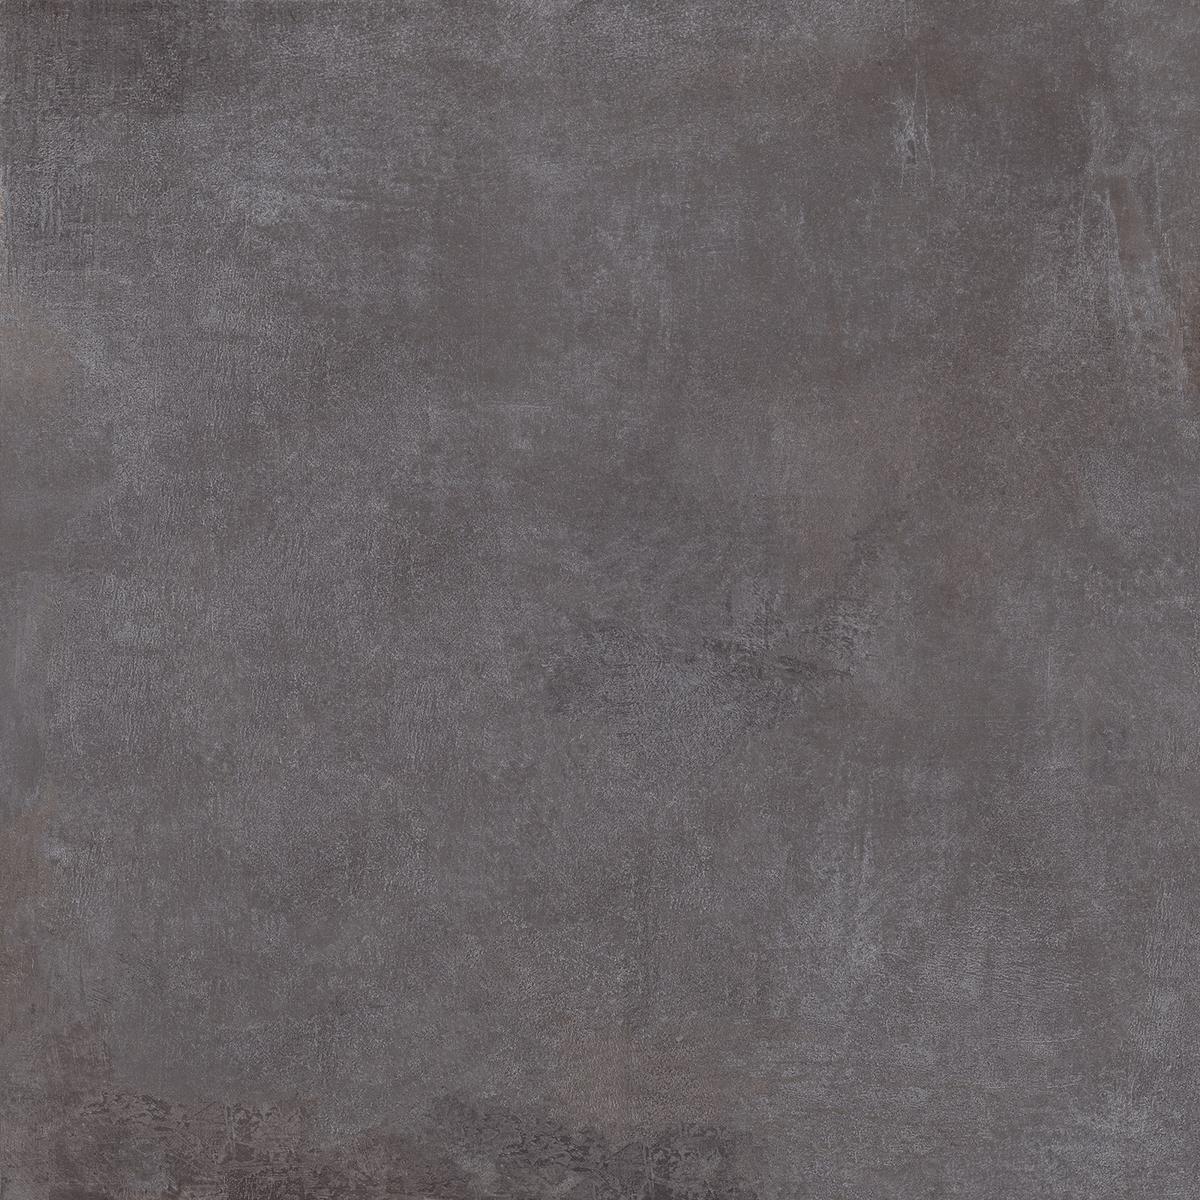 Carrelage aspect ciment noir nuancé de gris sans motifs taille 60x60 cm